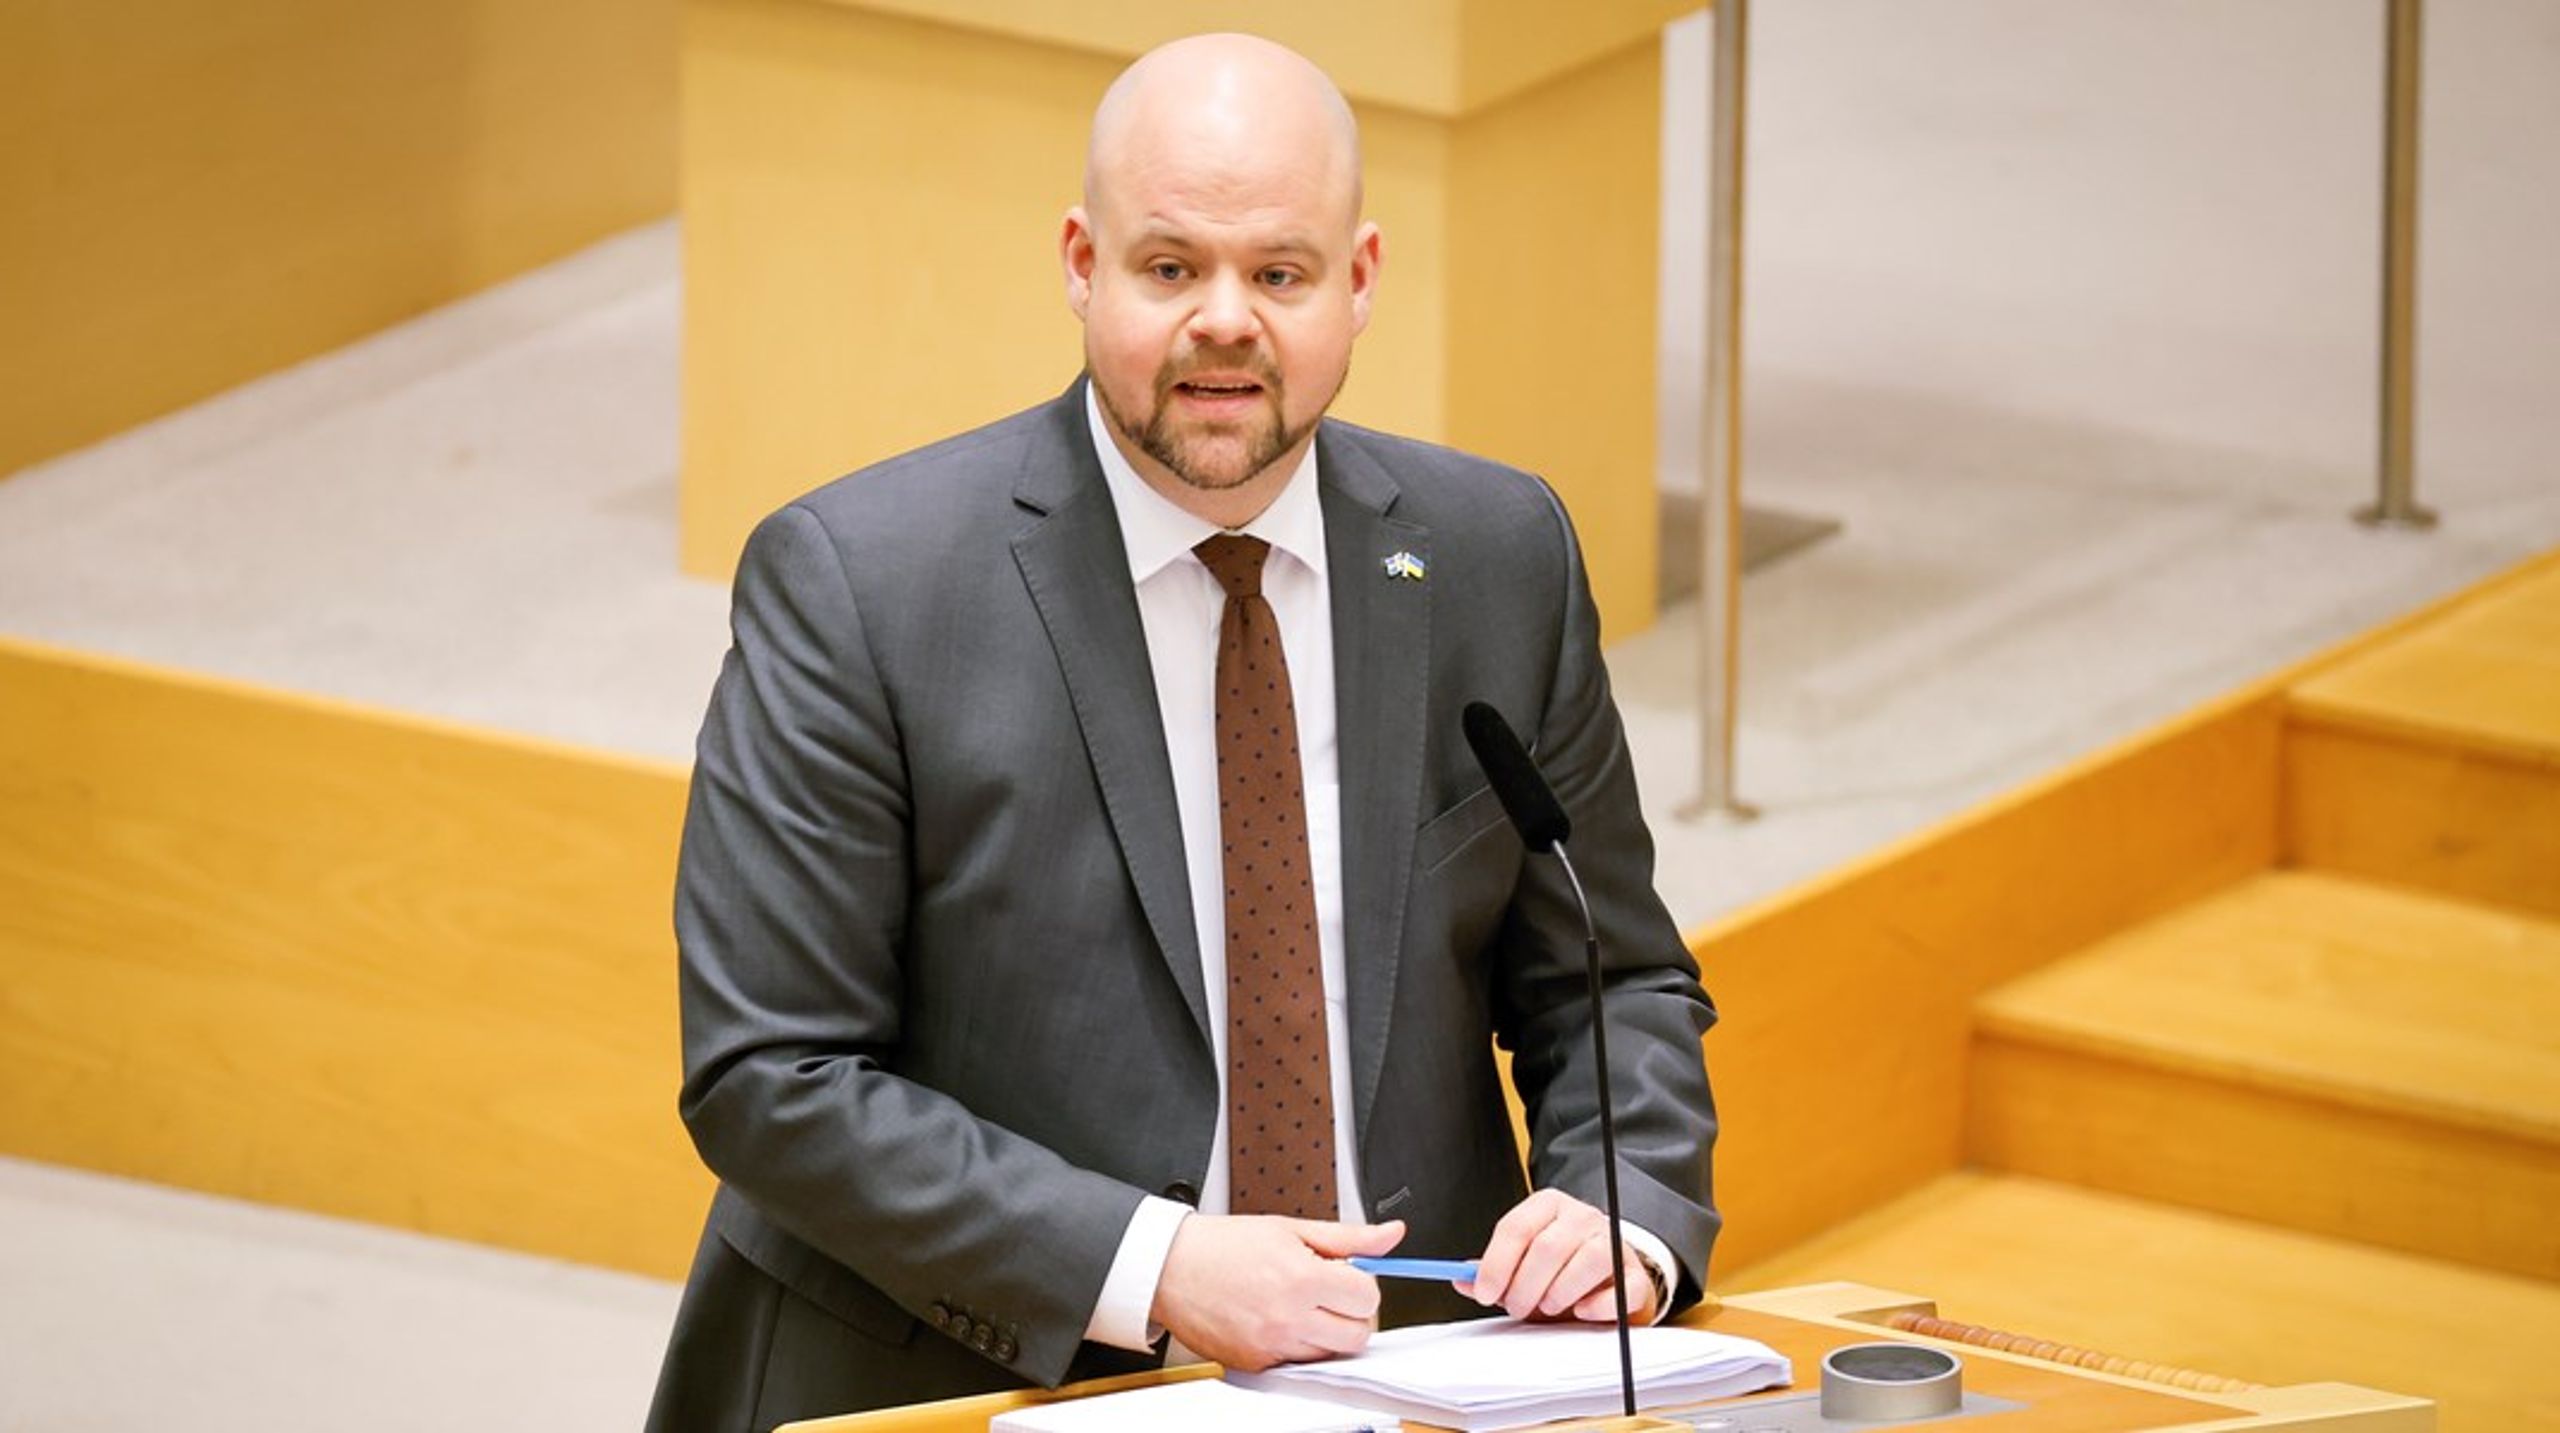 Låter landsbygdsminister Peter Kullgren (KD) sig styras av Sverigedemokraterna?